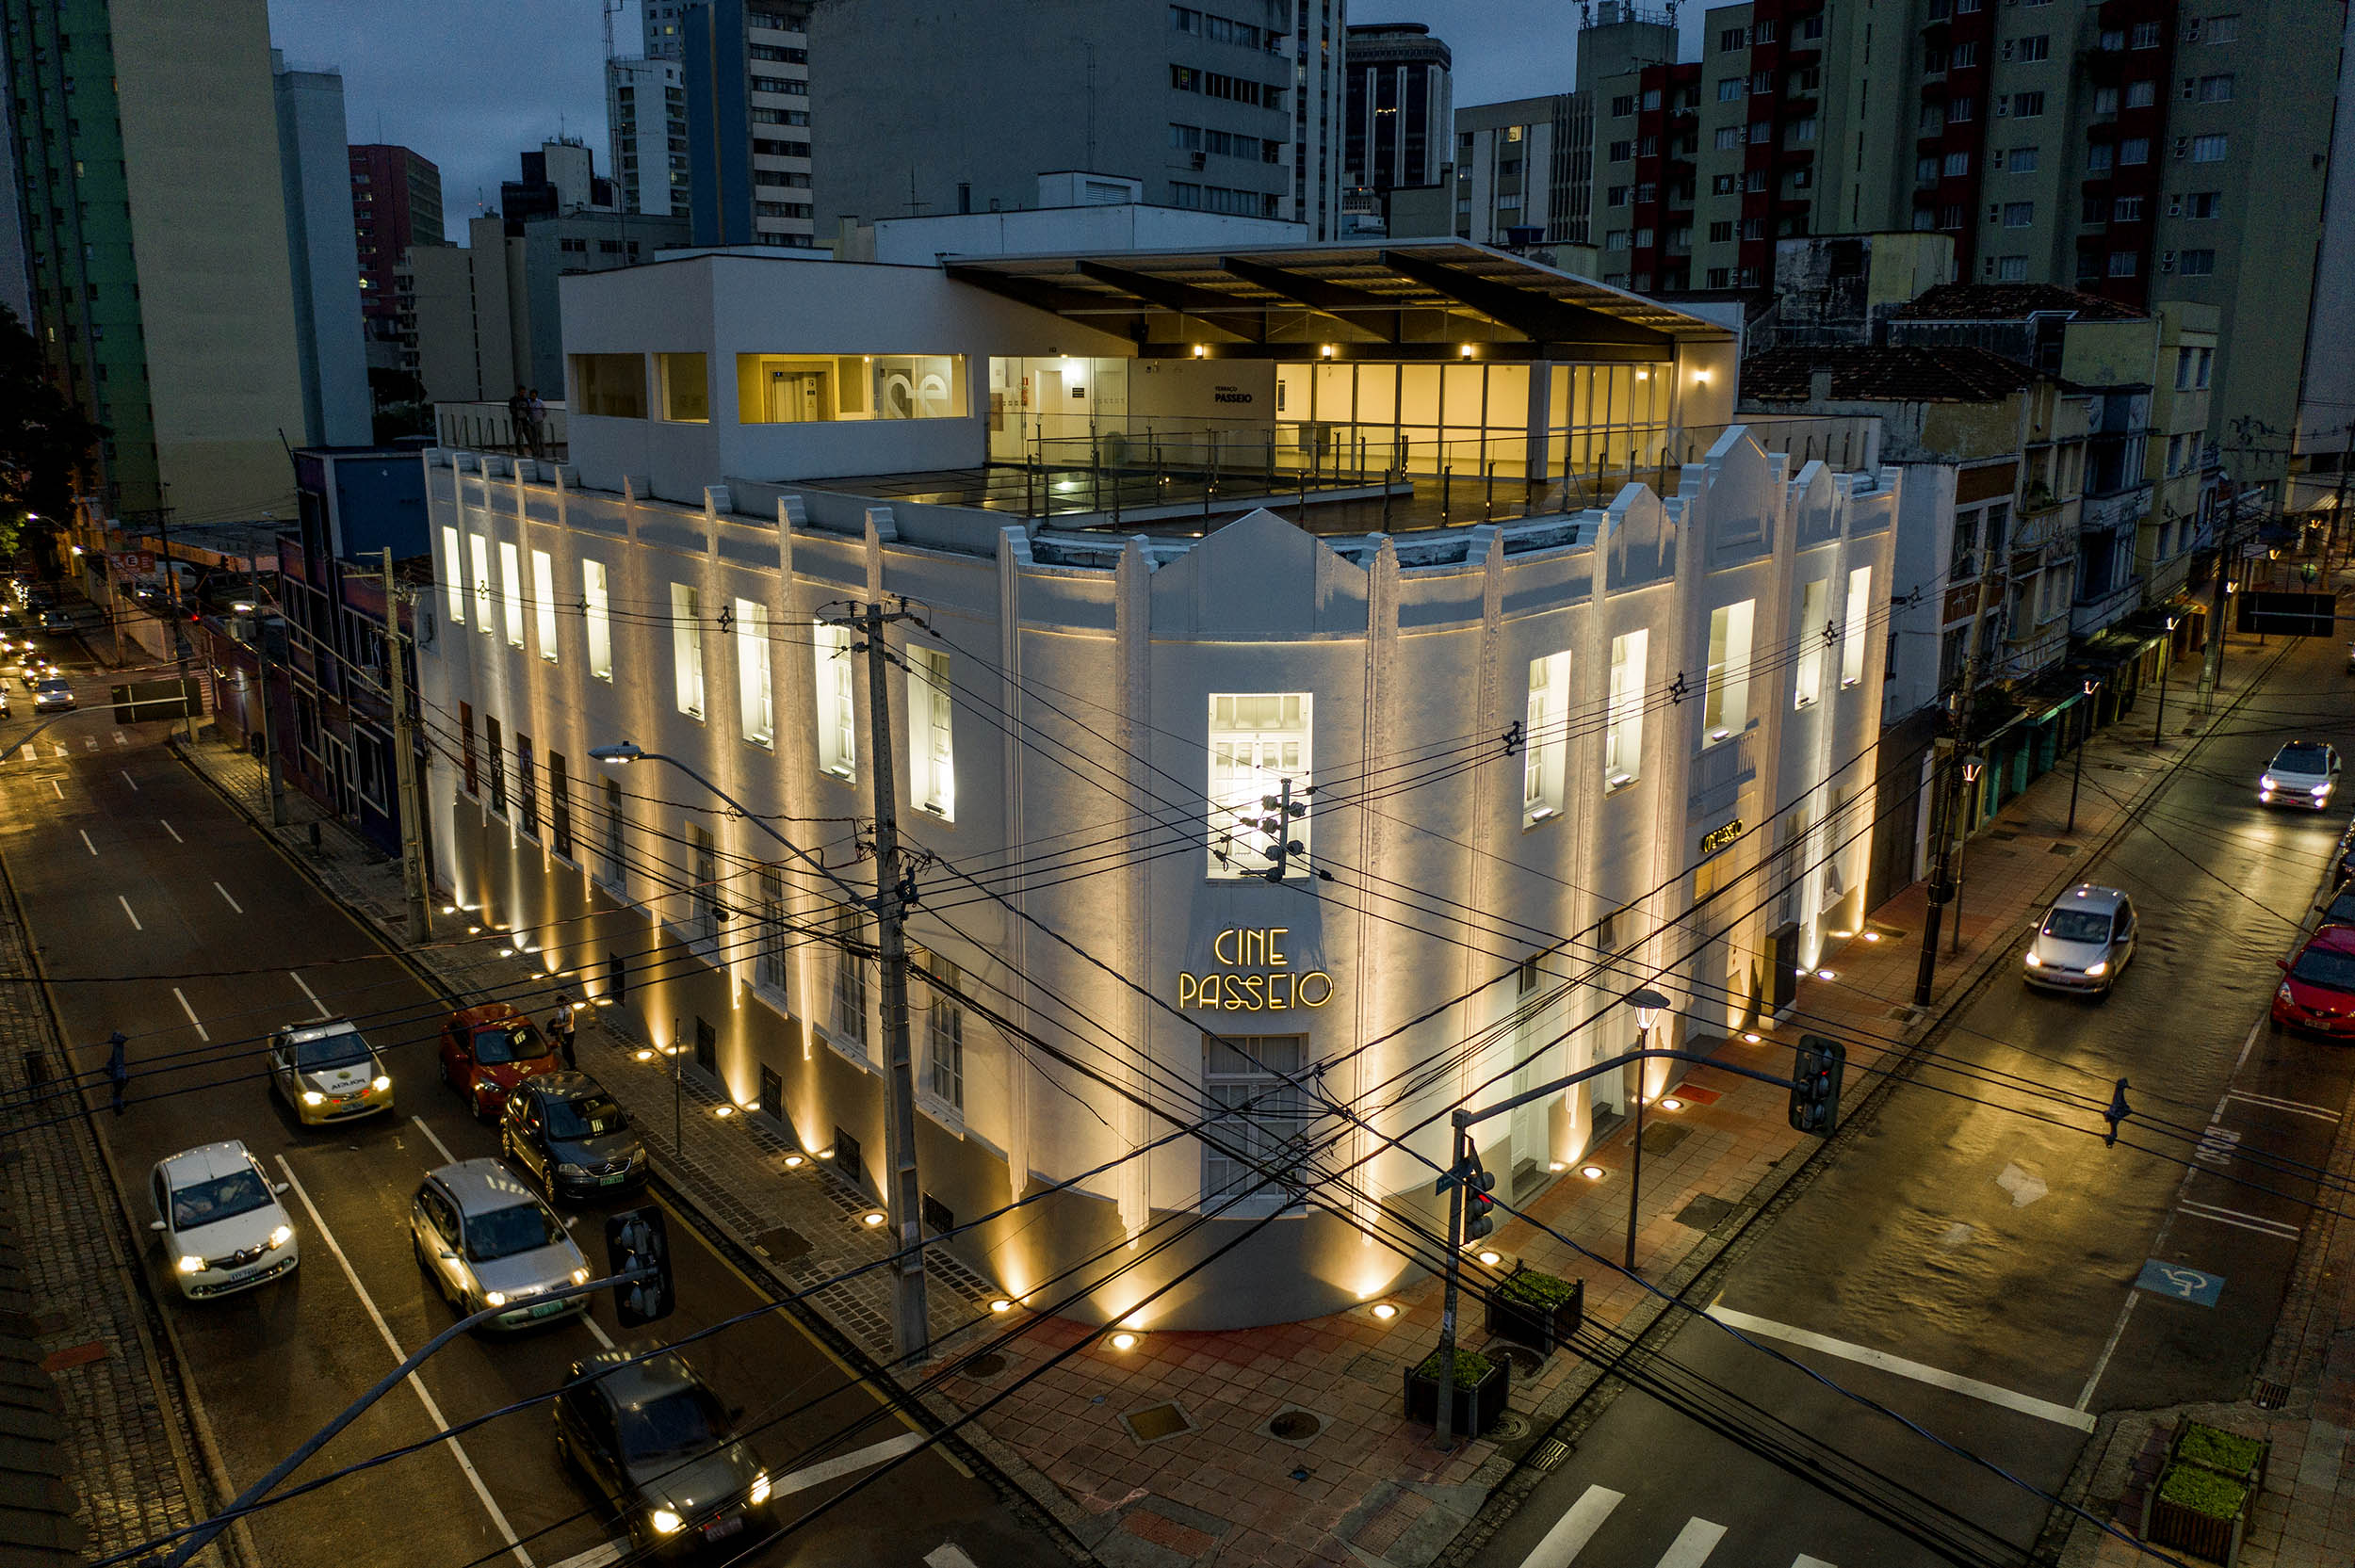 Cine Passeio, centro de lazer e cultura em Curitiba